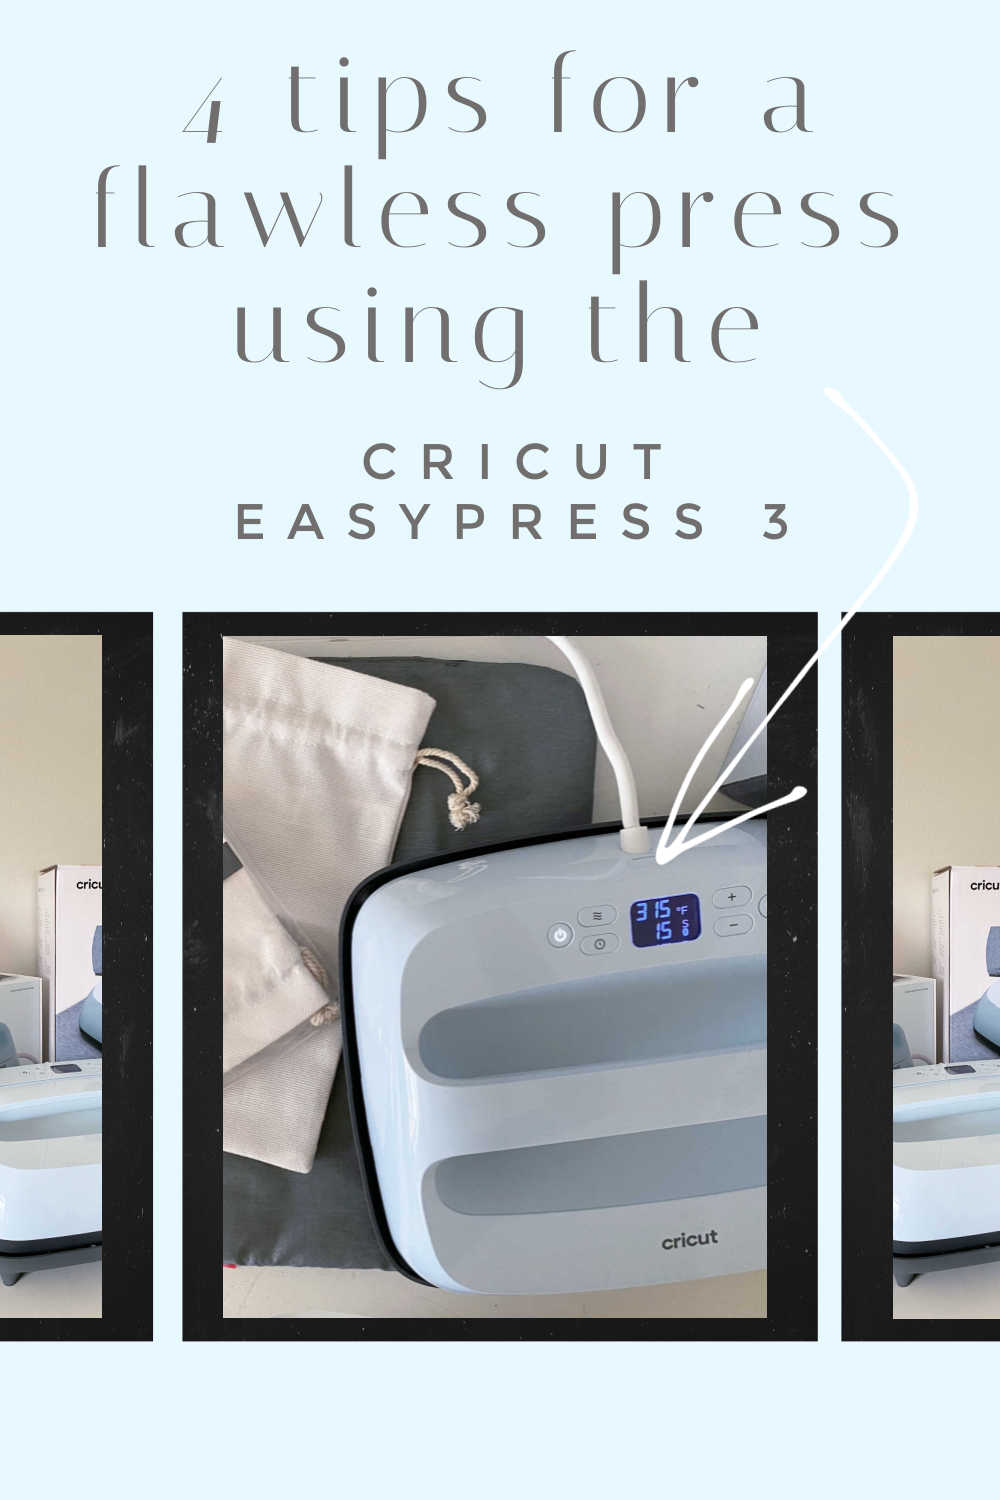 New Cricut Heat Presses: EasyPress 3, Hat Press, Autopress, and